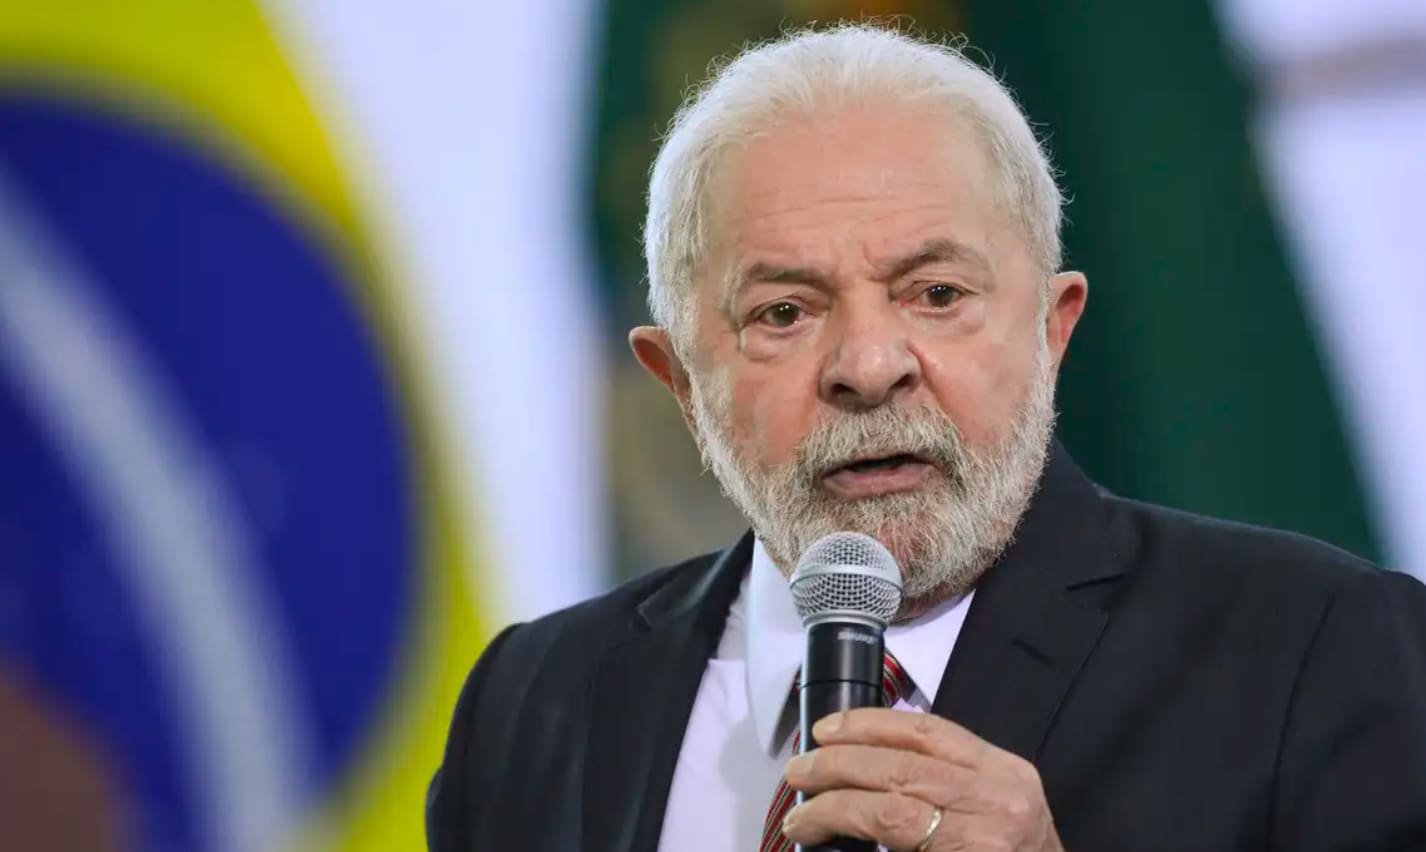 Na imagem, o presidente da República, Luiz Inácio Lula da Silva (PT), durante um discurso